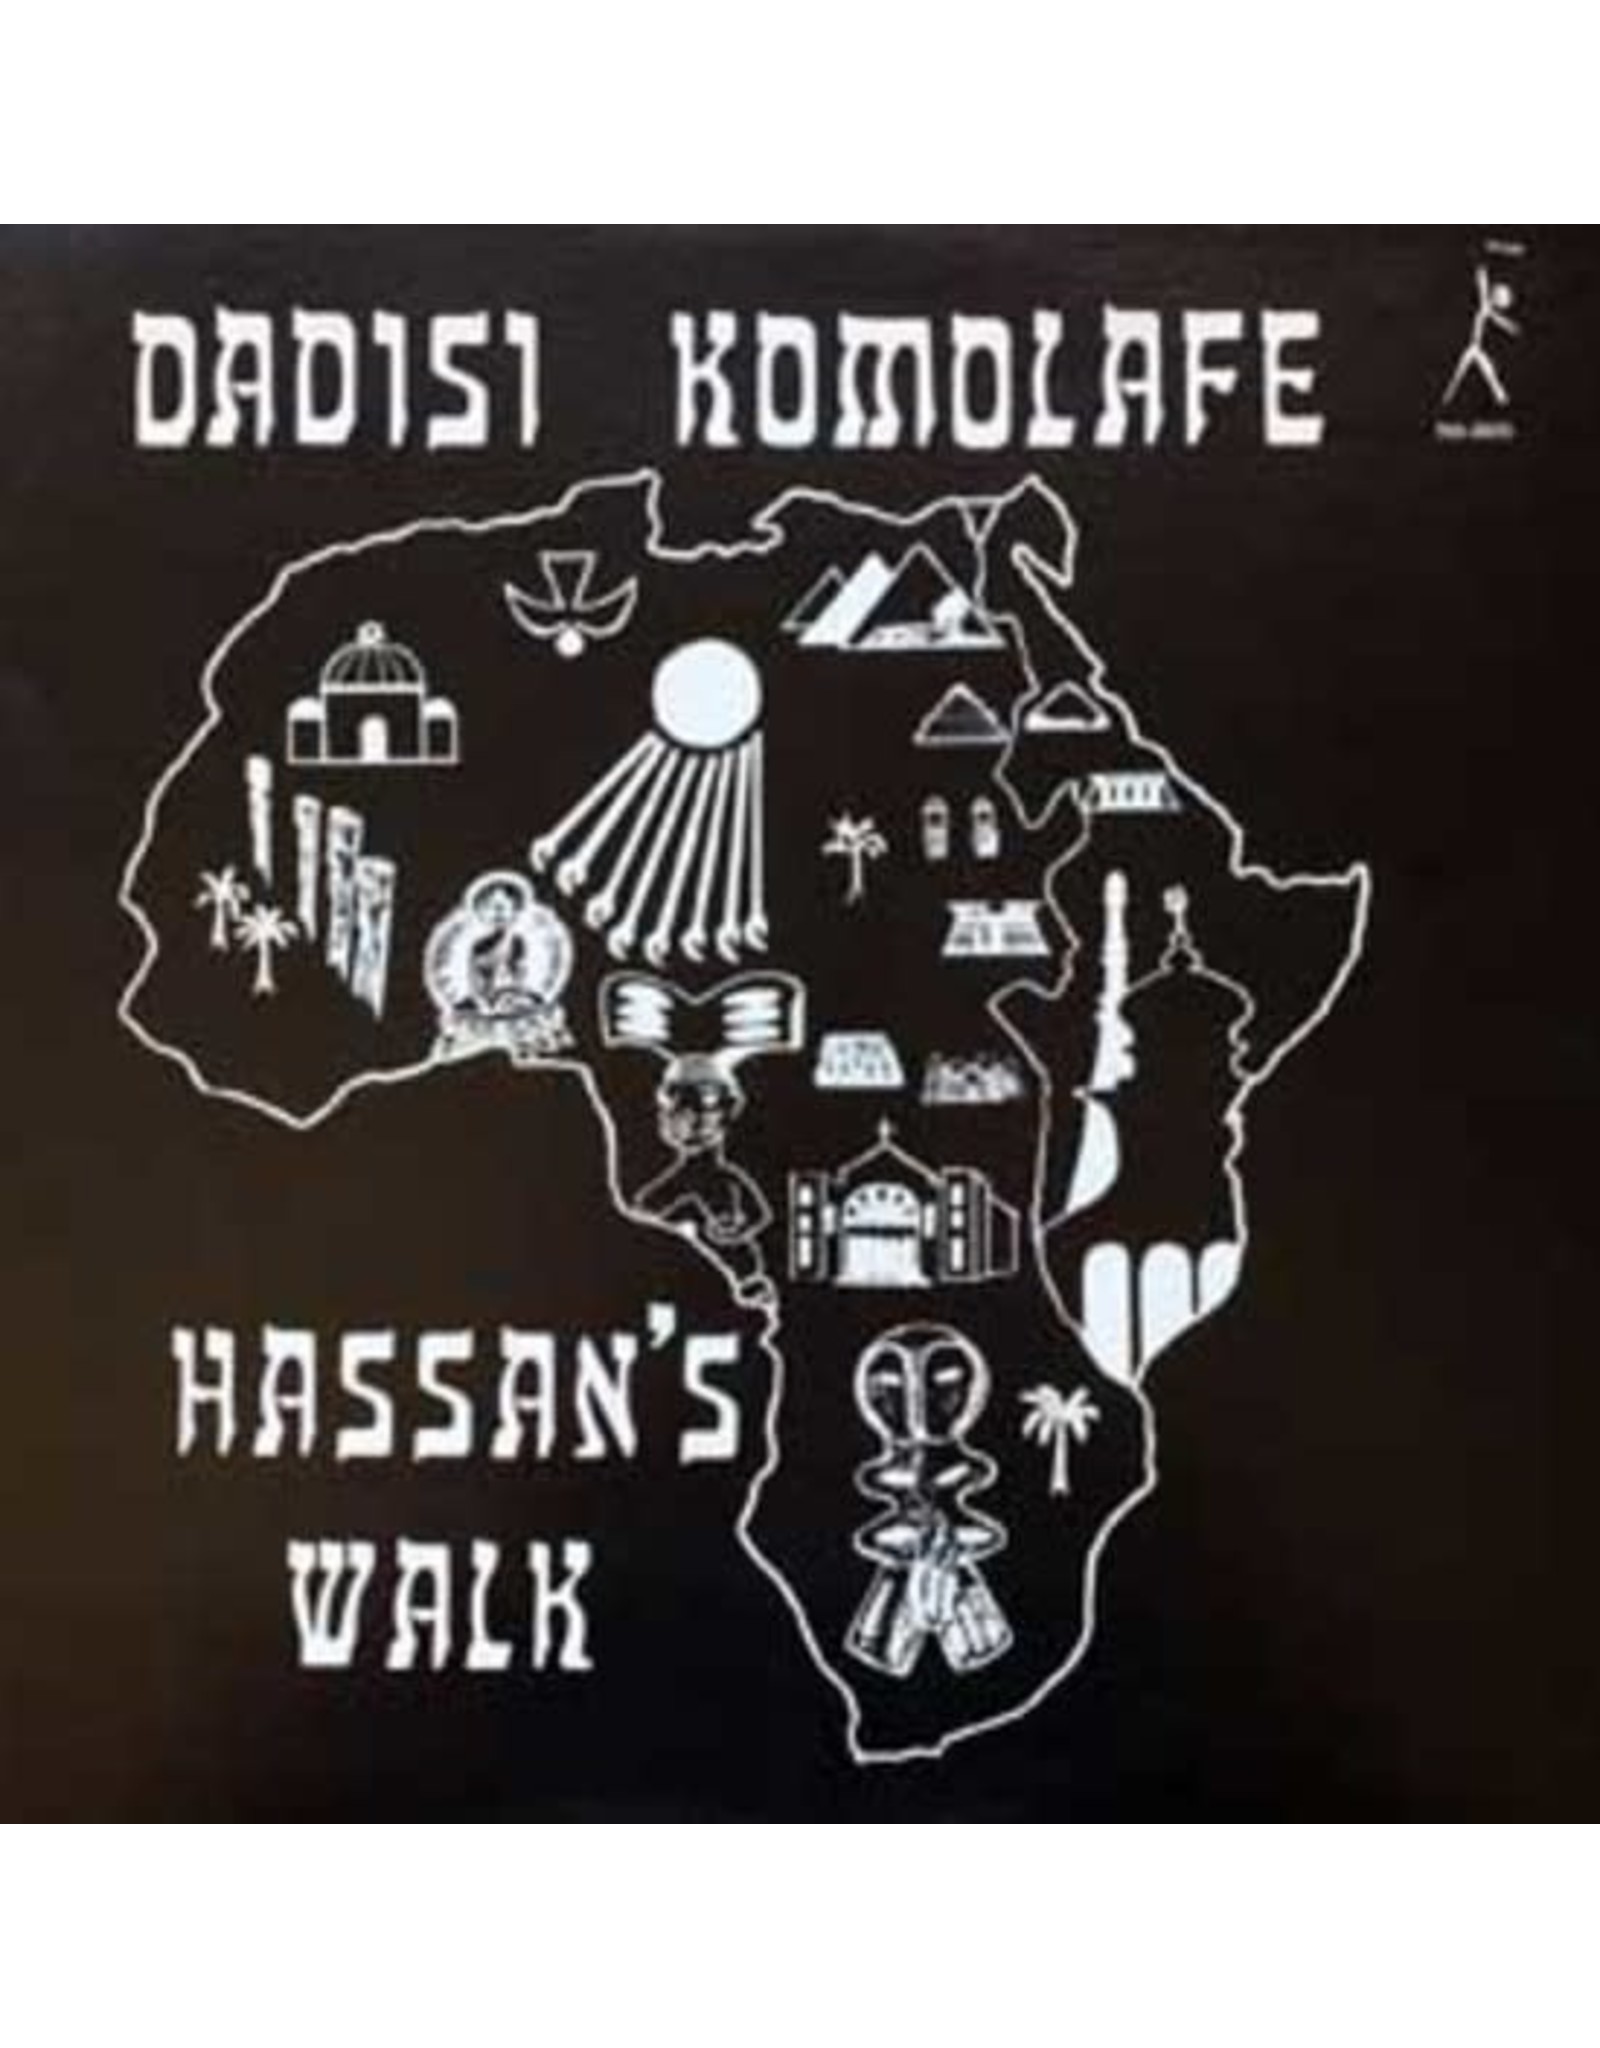 Pure Pleasure Komolahe, Dadisi: Hassan’s Walk LP